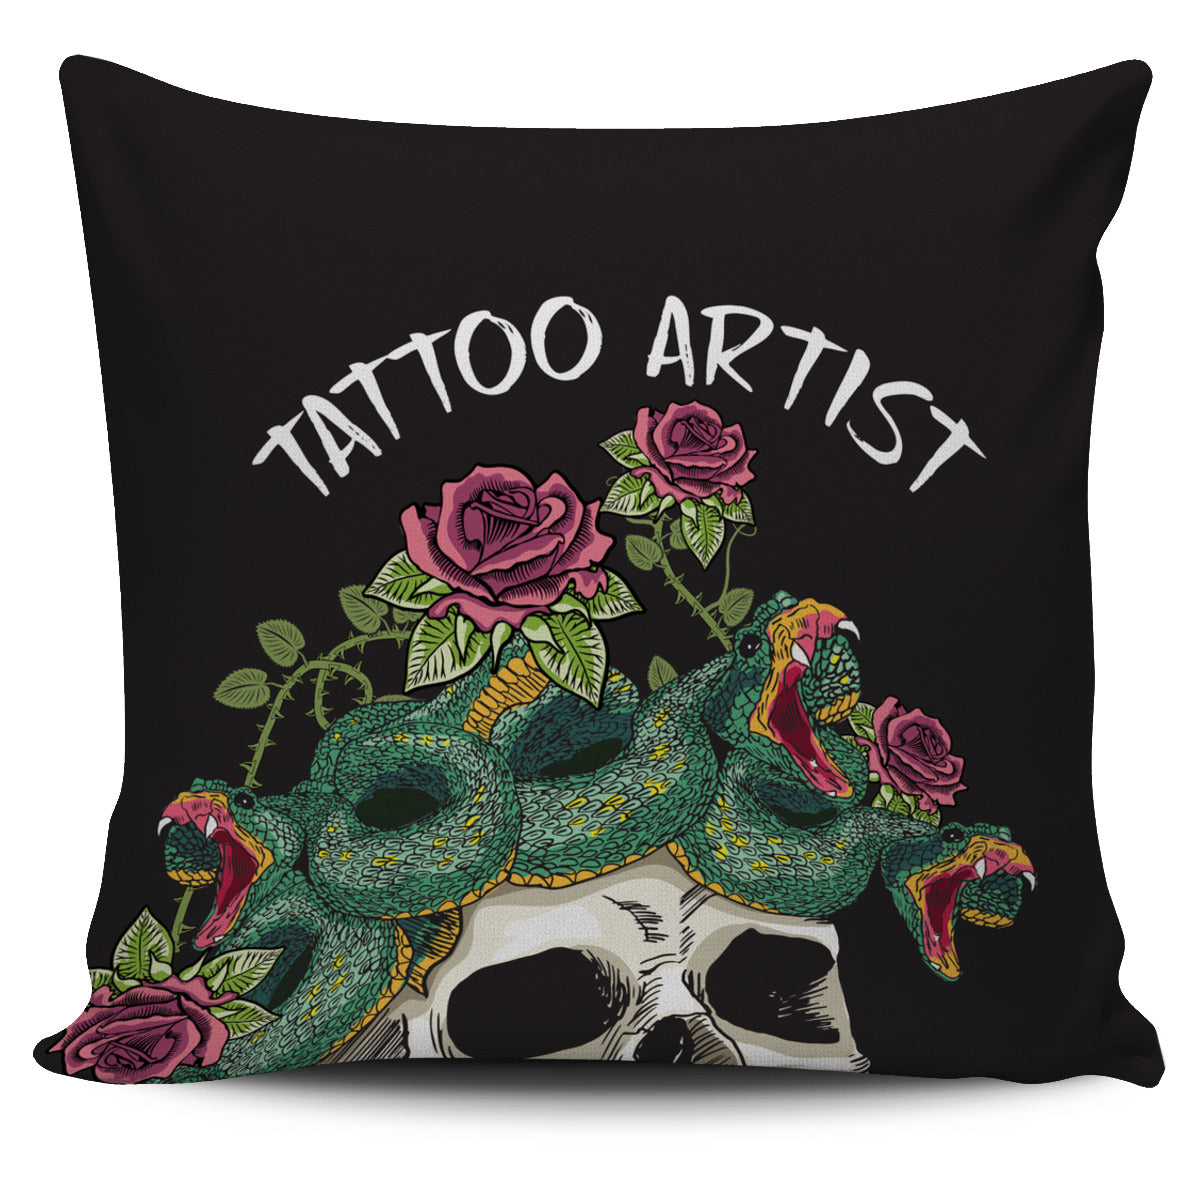 Tattoo Artist Pillow Cover